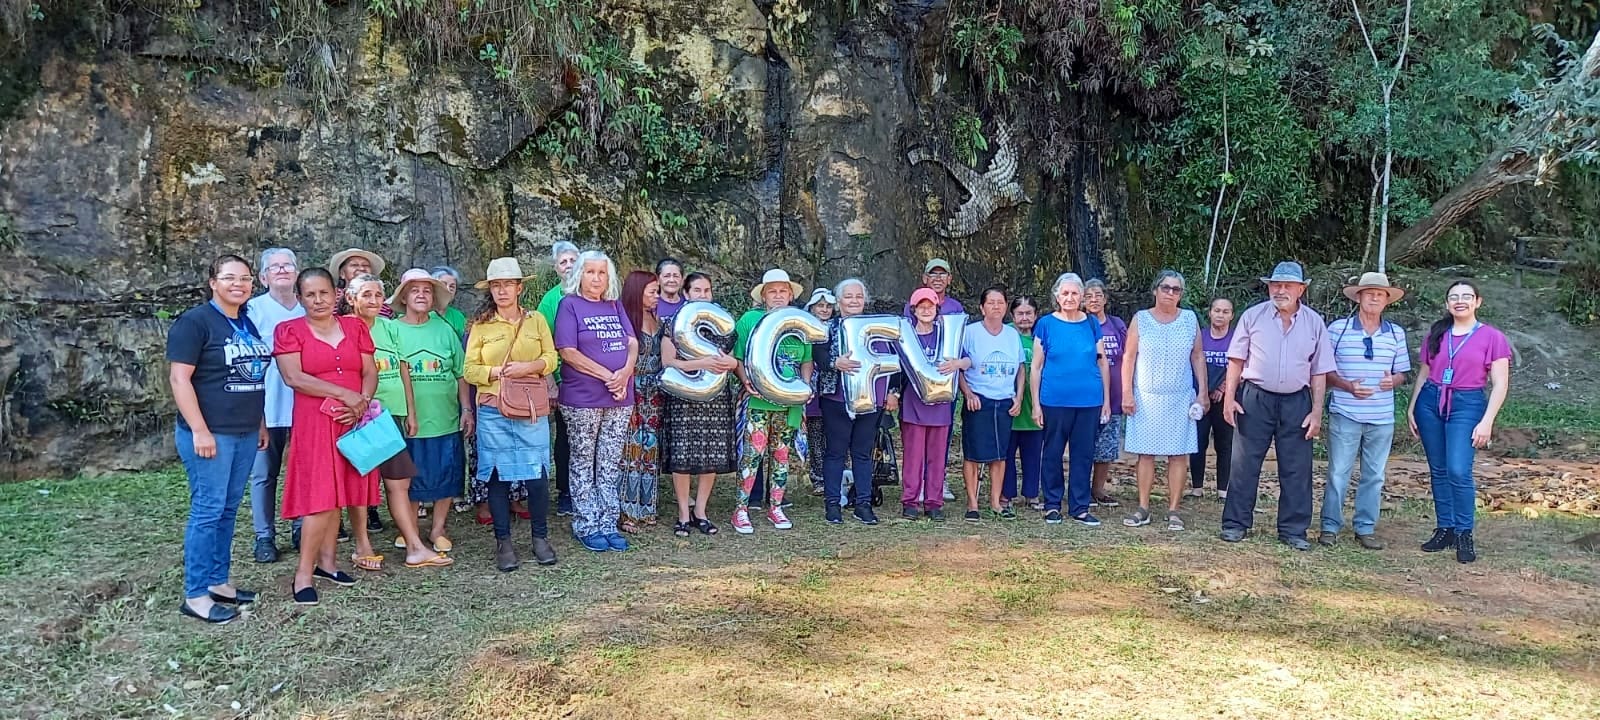 Turismo de Itararé (SP) promove passeio com idosos do Projeto SCFV no Parque da Barreira